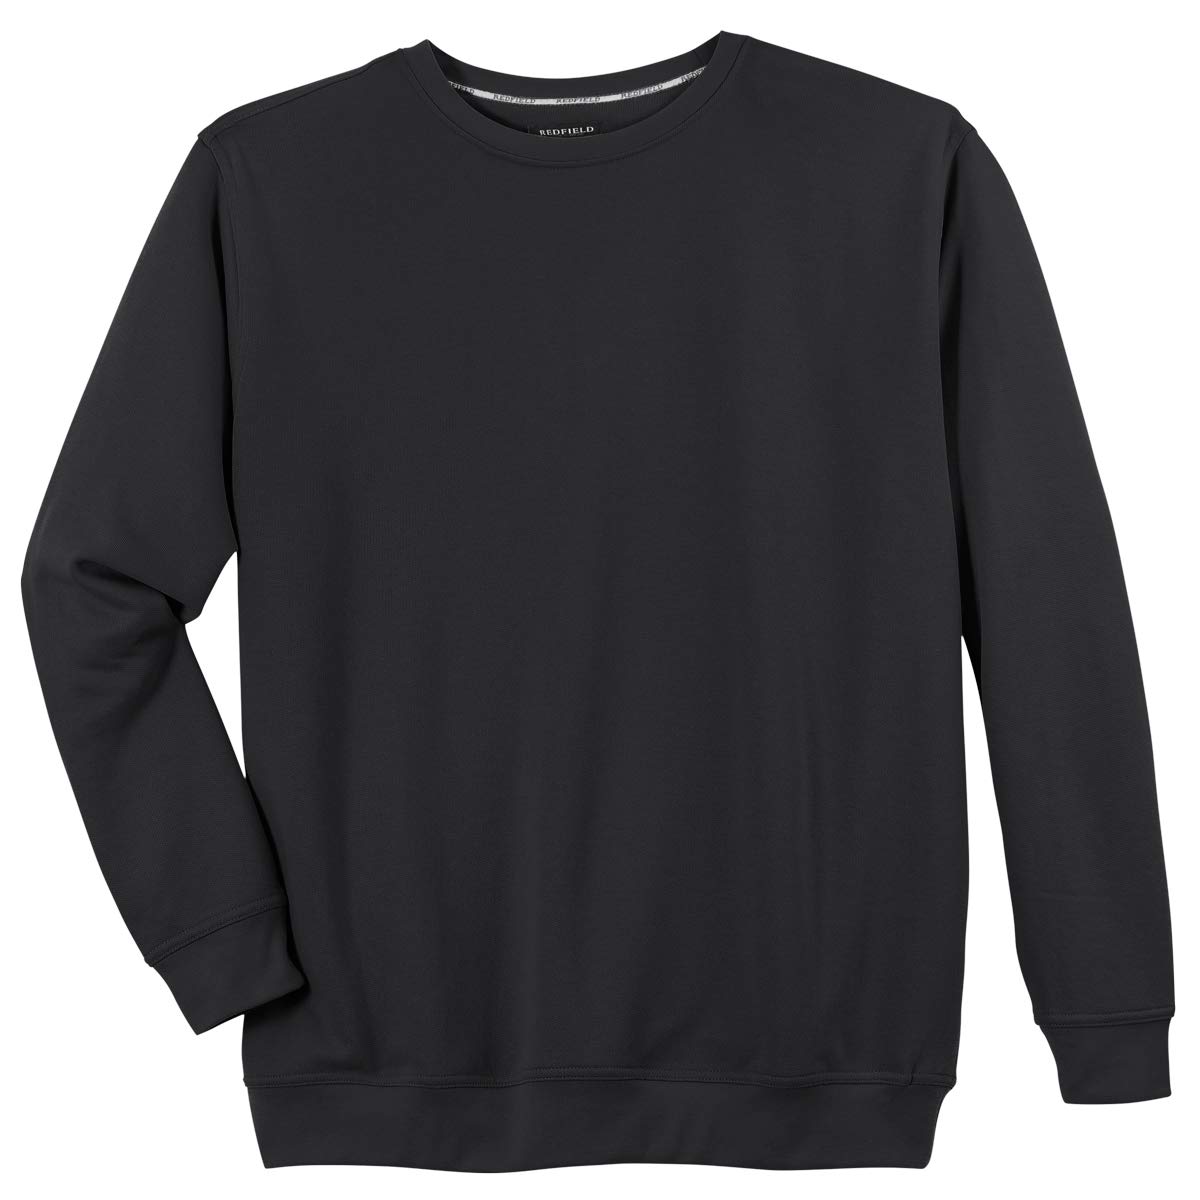 Redfield Sweatshirt Herren Übergröße schwarz, XL Größe:7XL